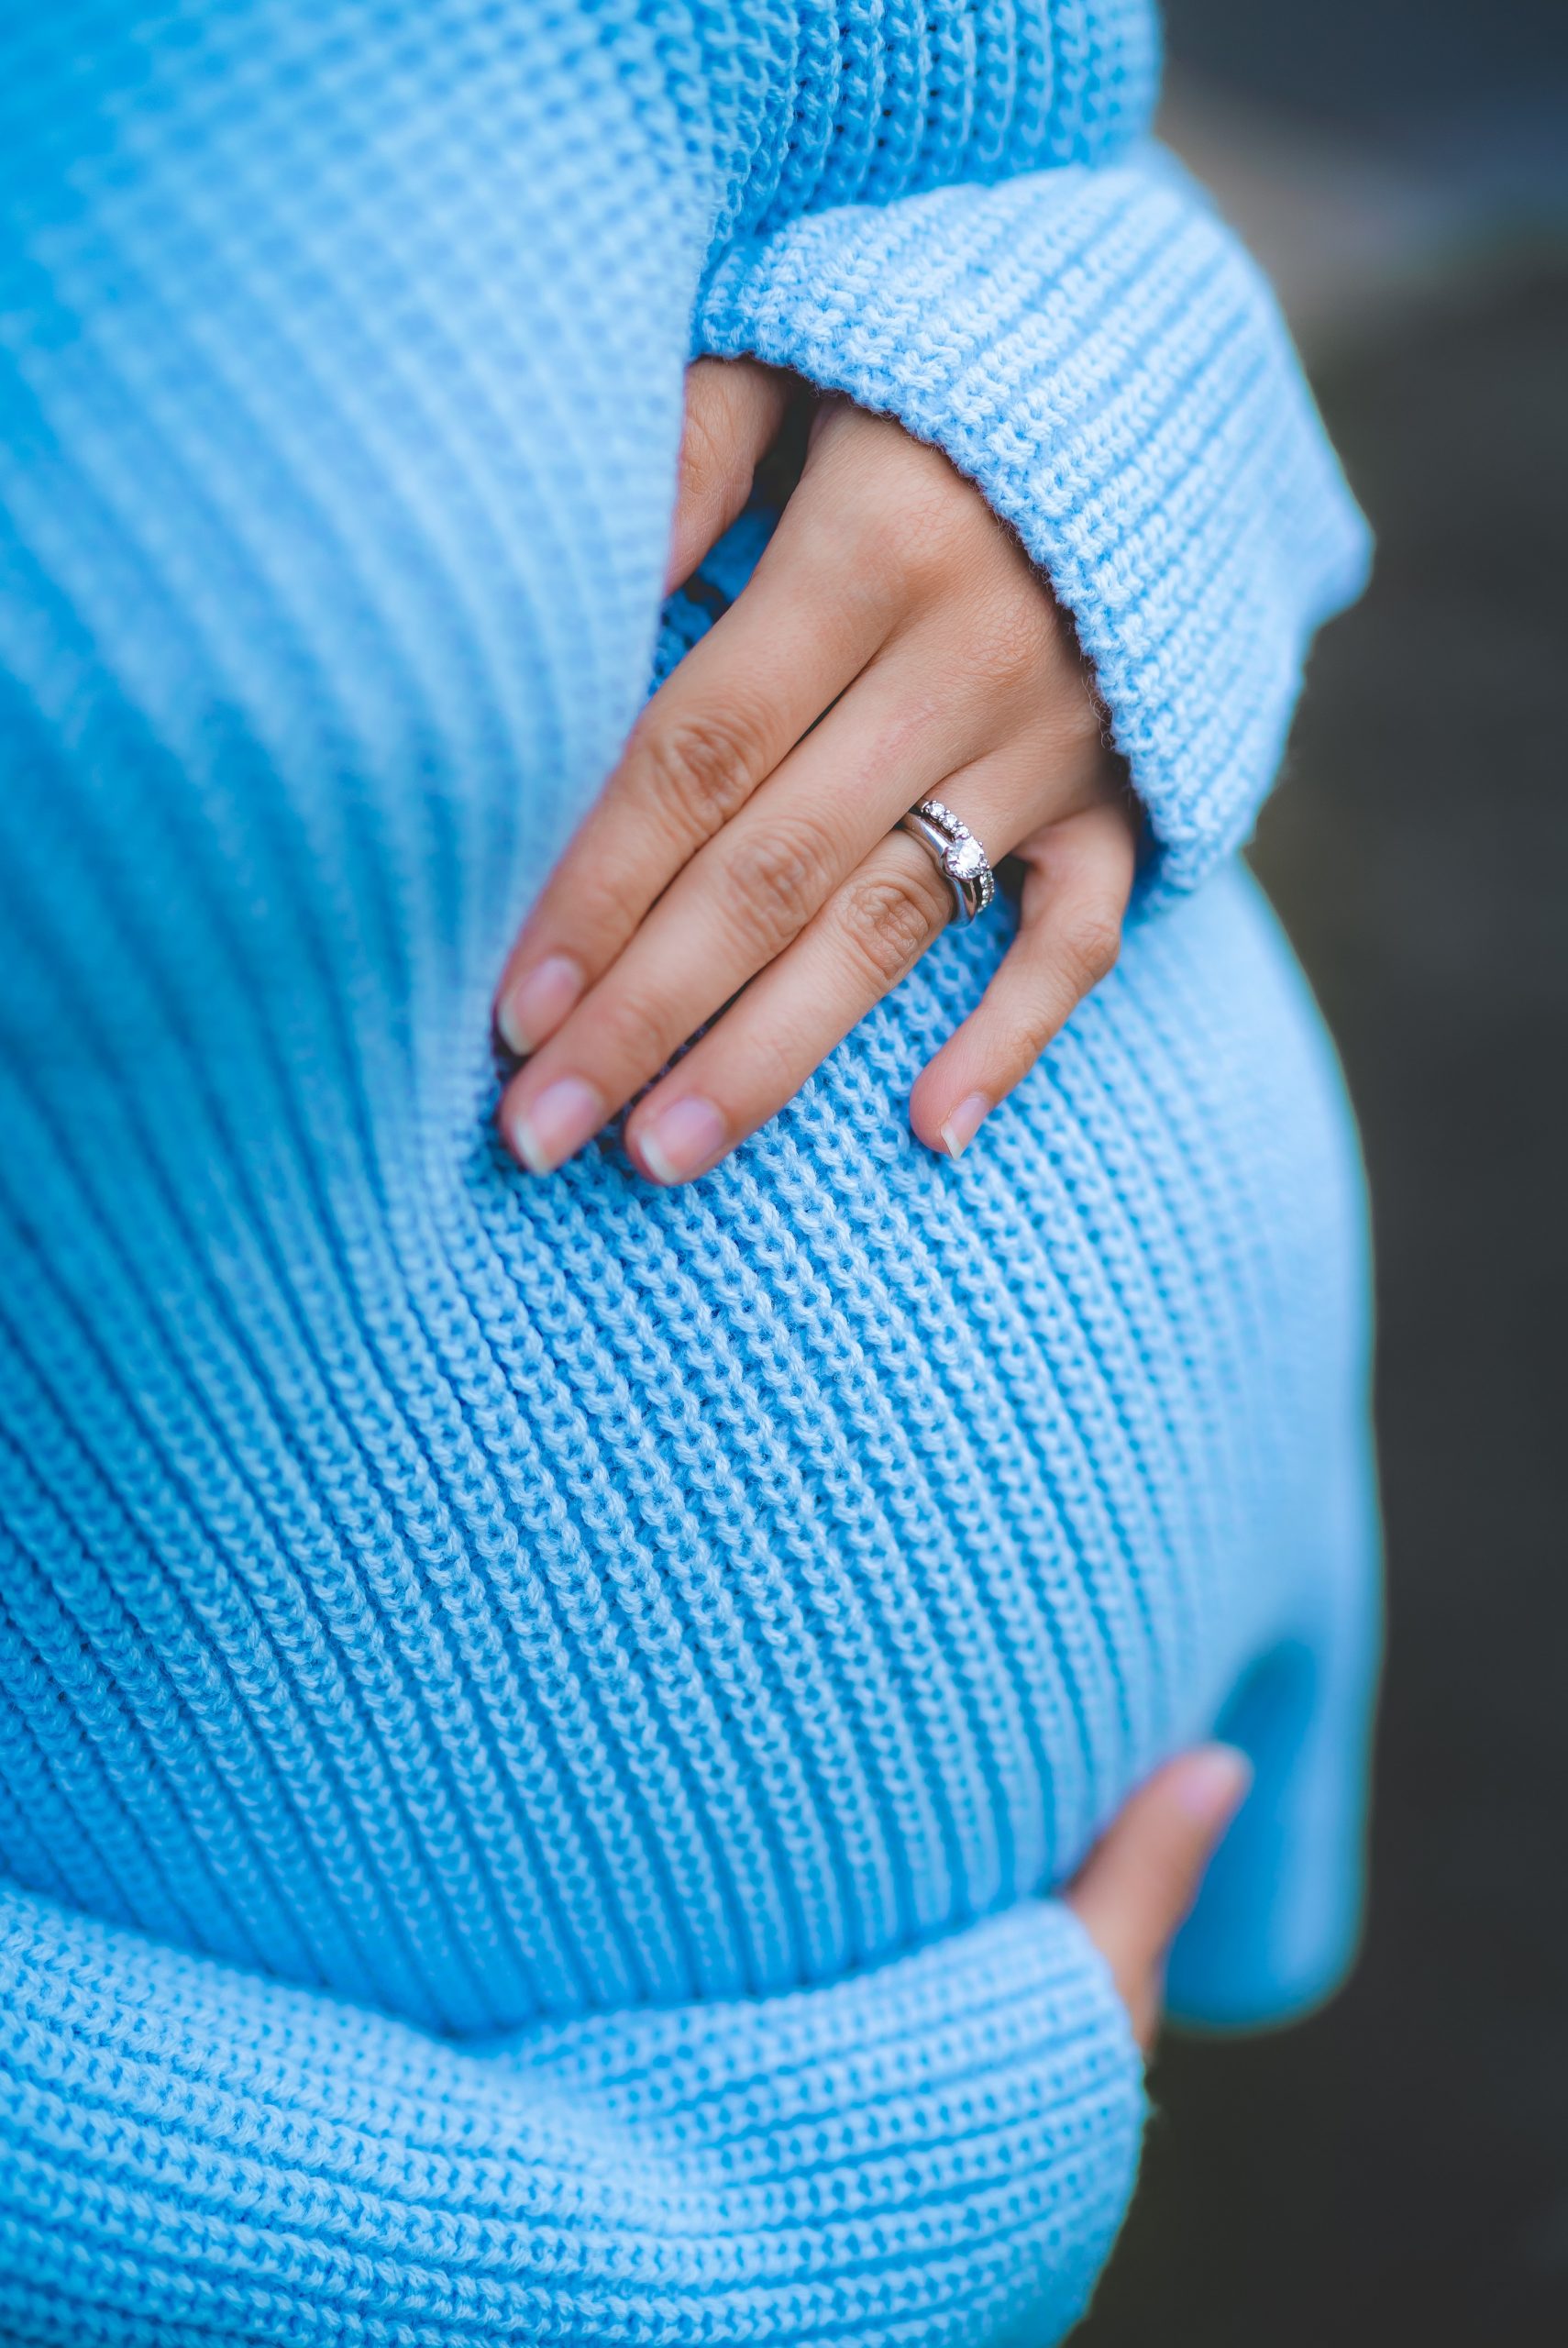 Enfrentando los desafíos: Cómo transitar el tratamiento de fertilidad